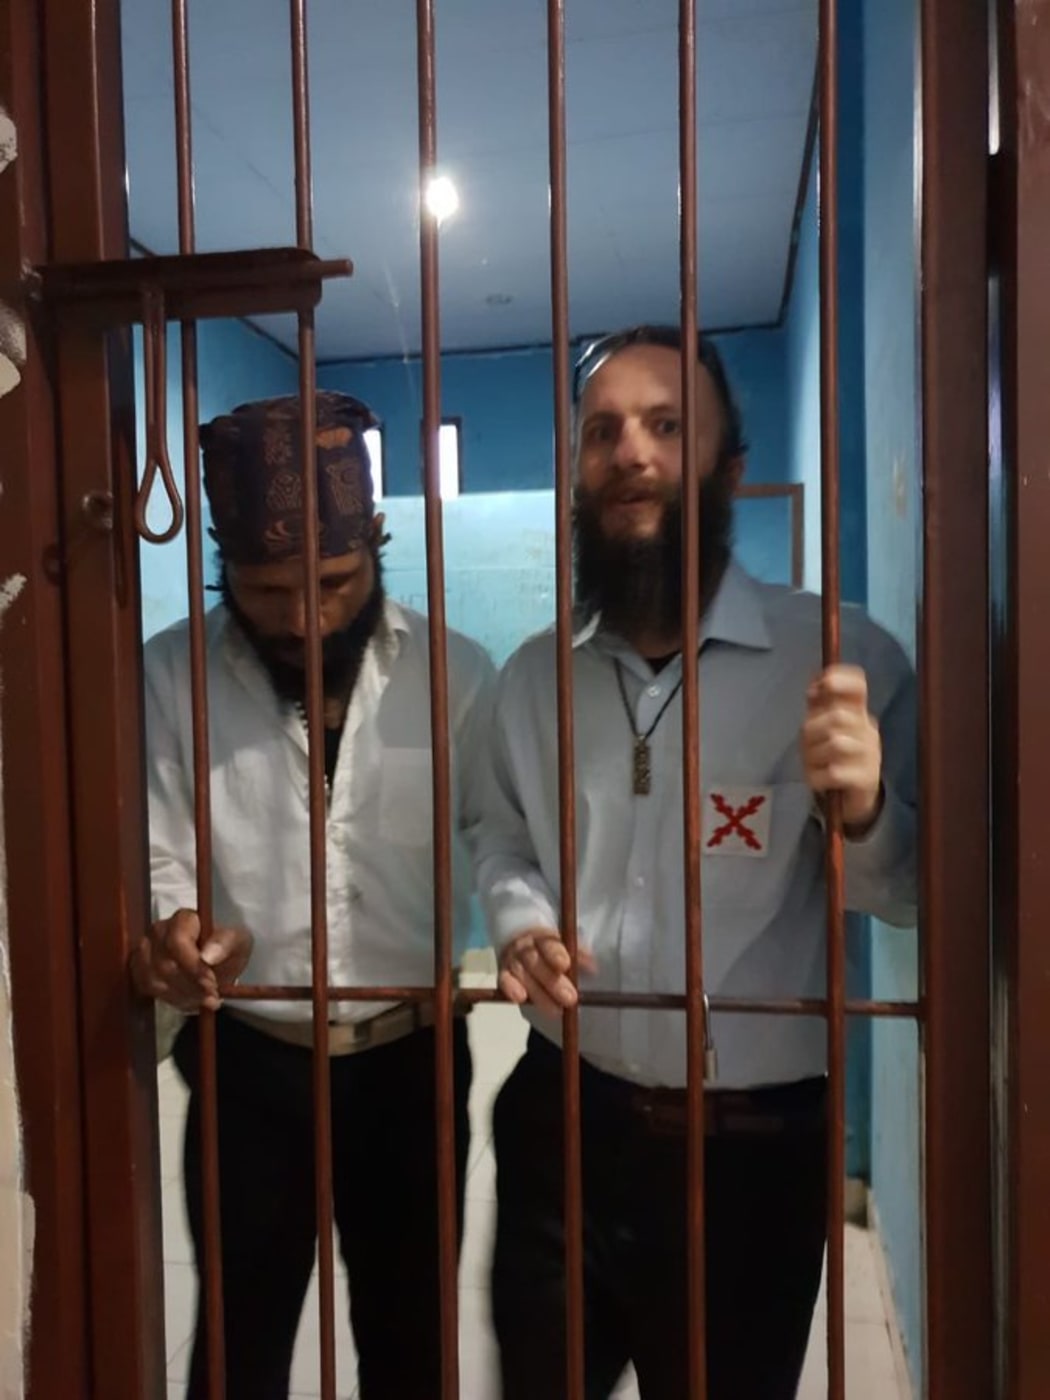 Jakub Skrzypski in prison